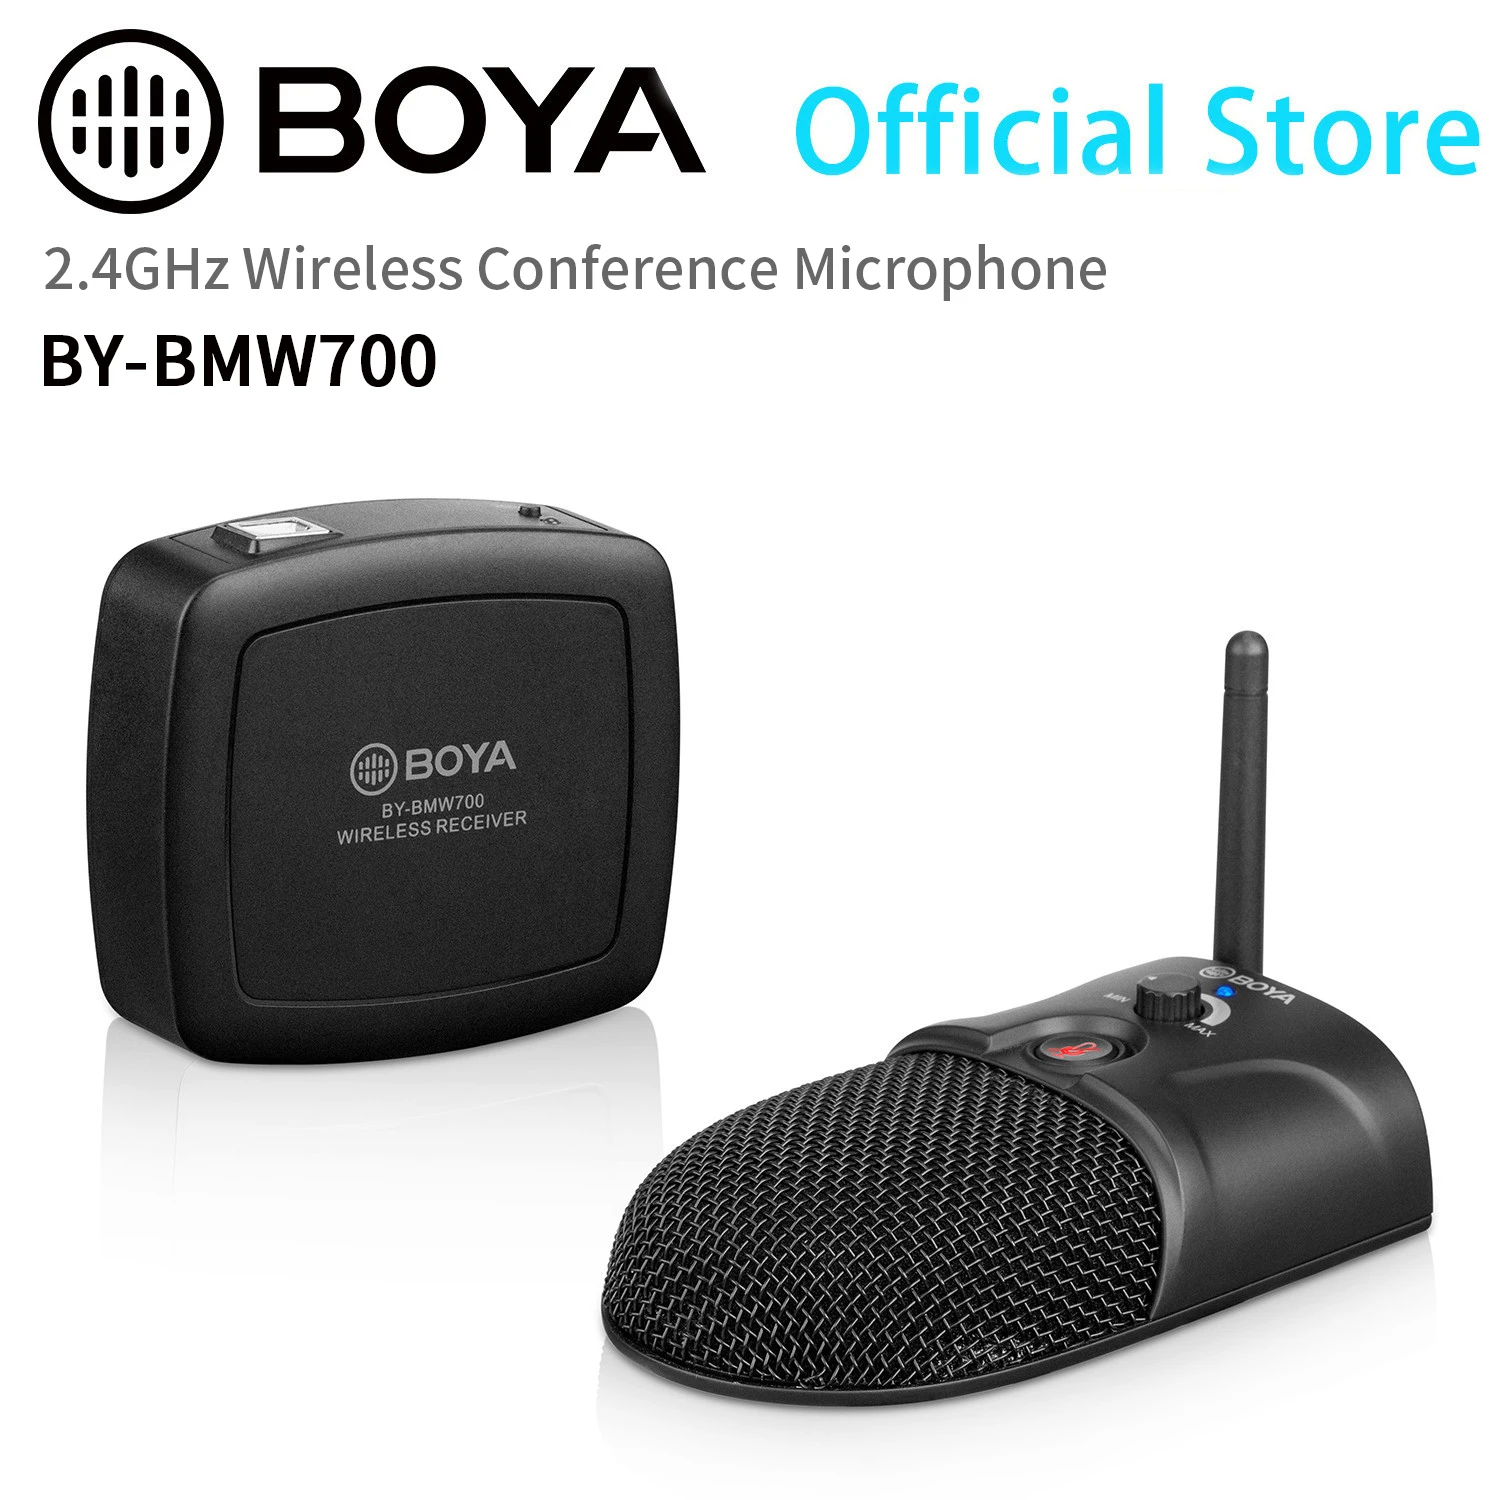 BOYA-micrófono inalámbrico profesional para reuniones, dispositivo USB de 2,4 GHz, para conferencias, festivales, eventos y conferencias, BY-BMW700